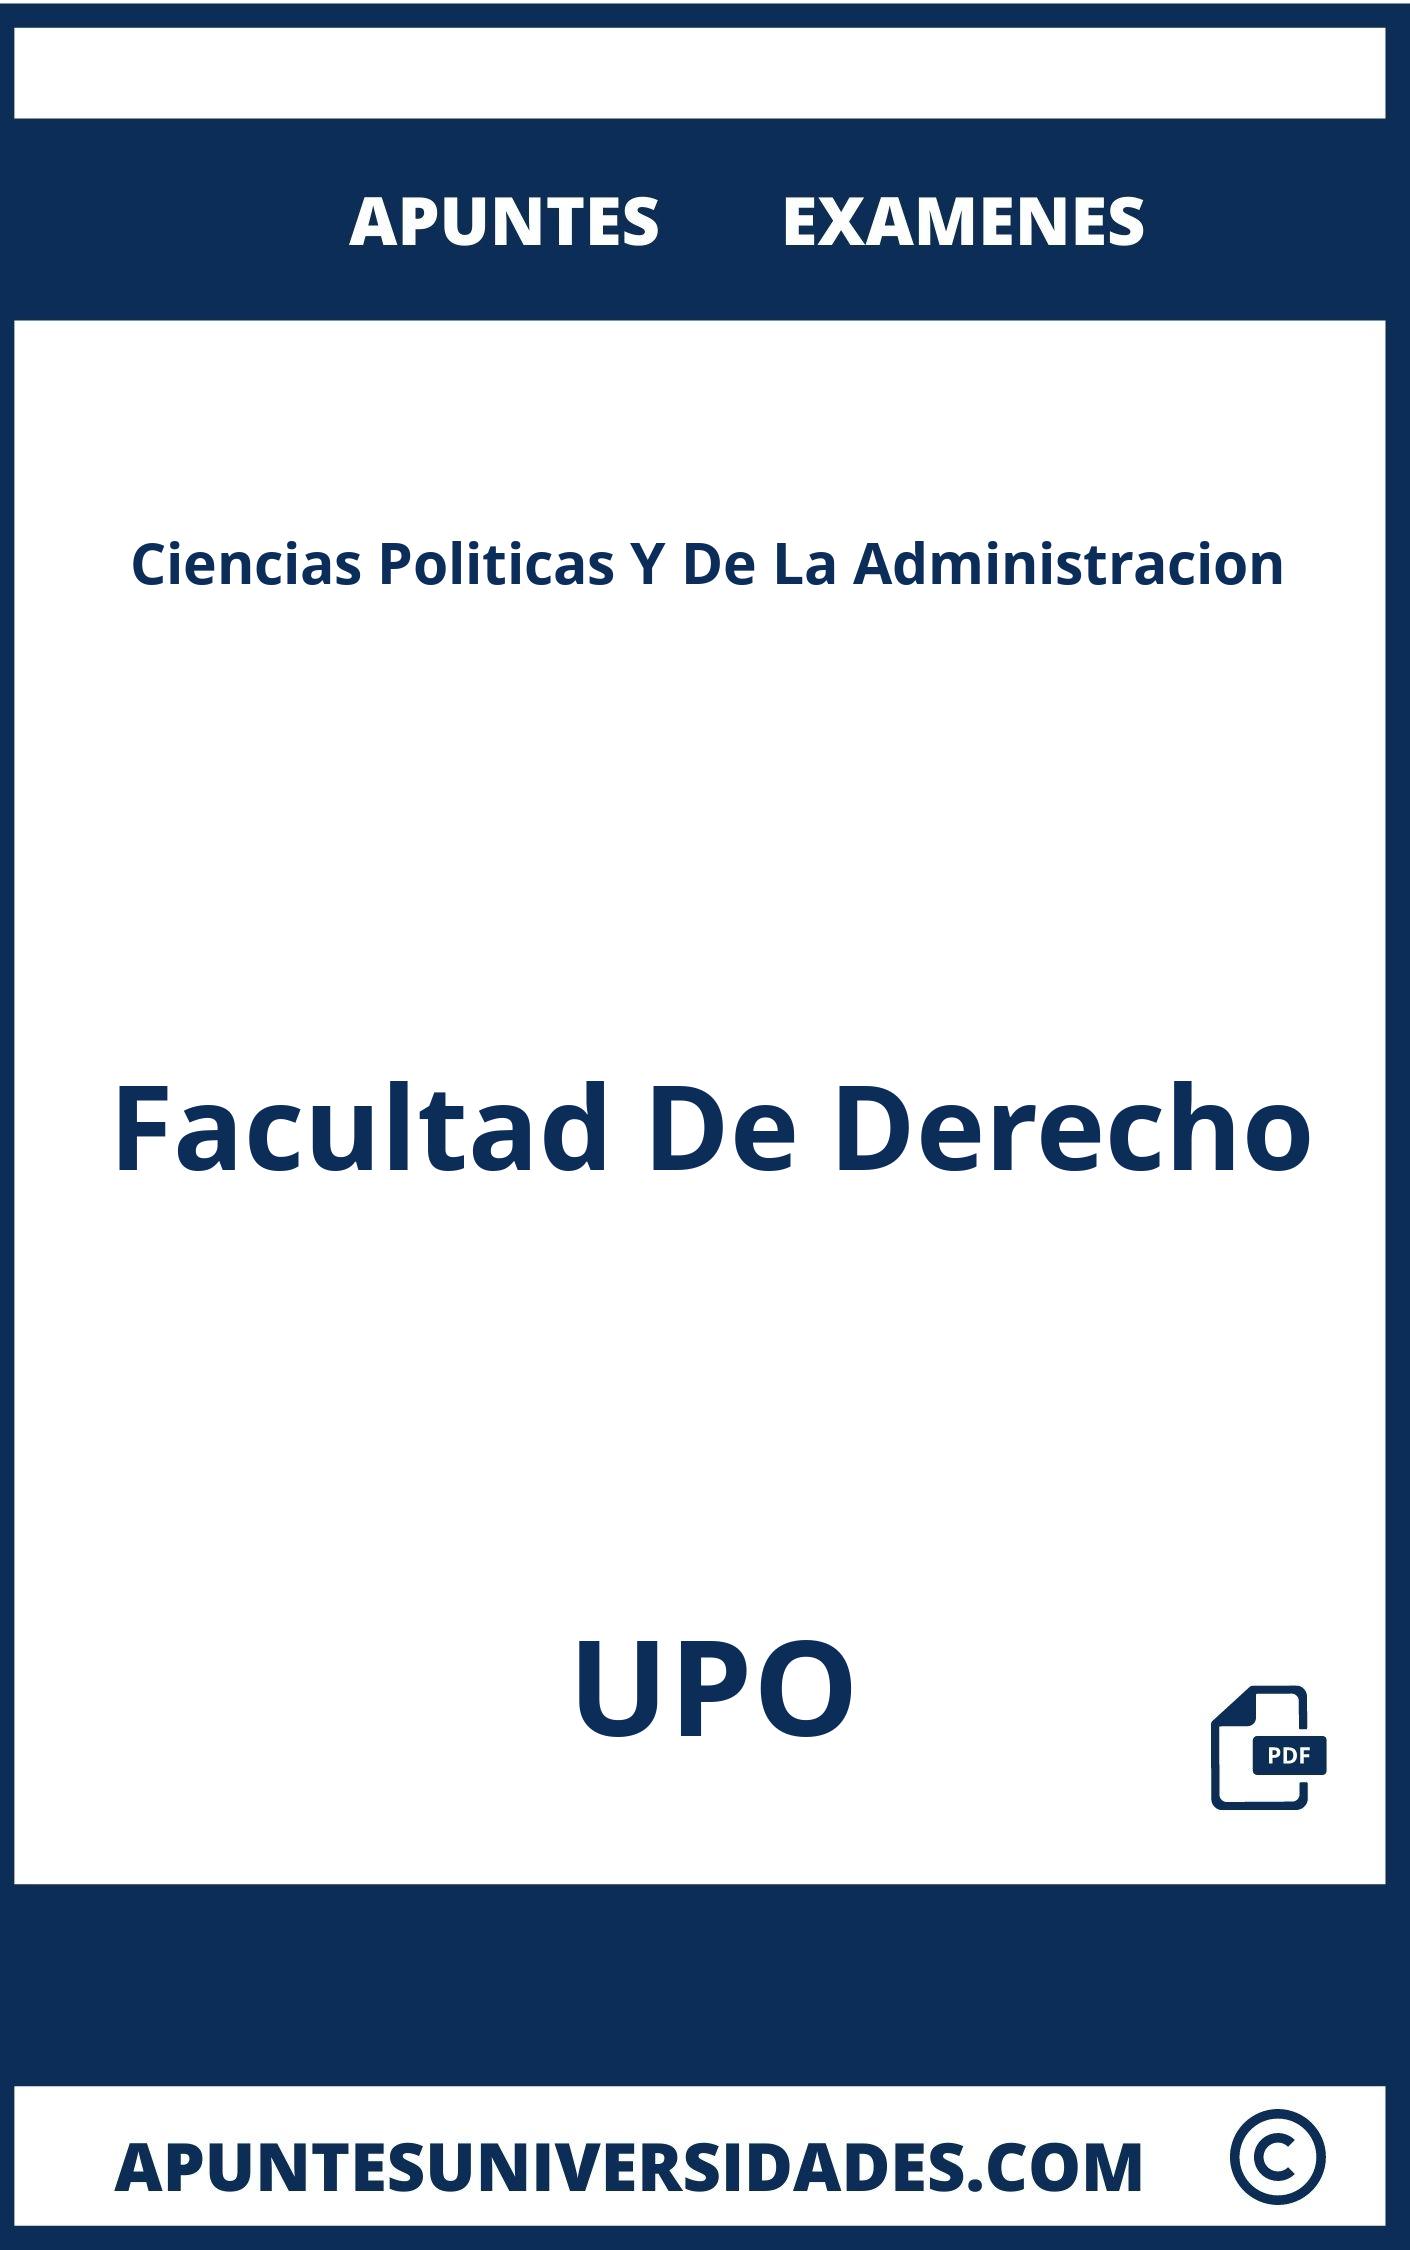 Apuntes Examenes Ciencias Politicas Y De La Administracion UPO